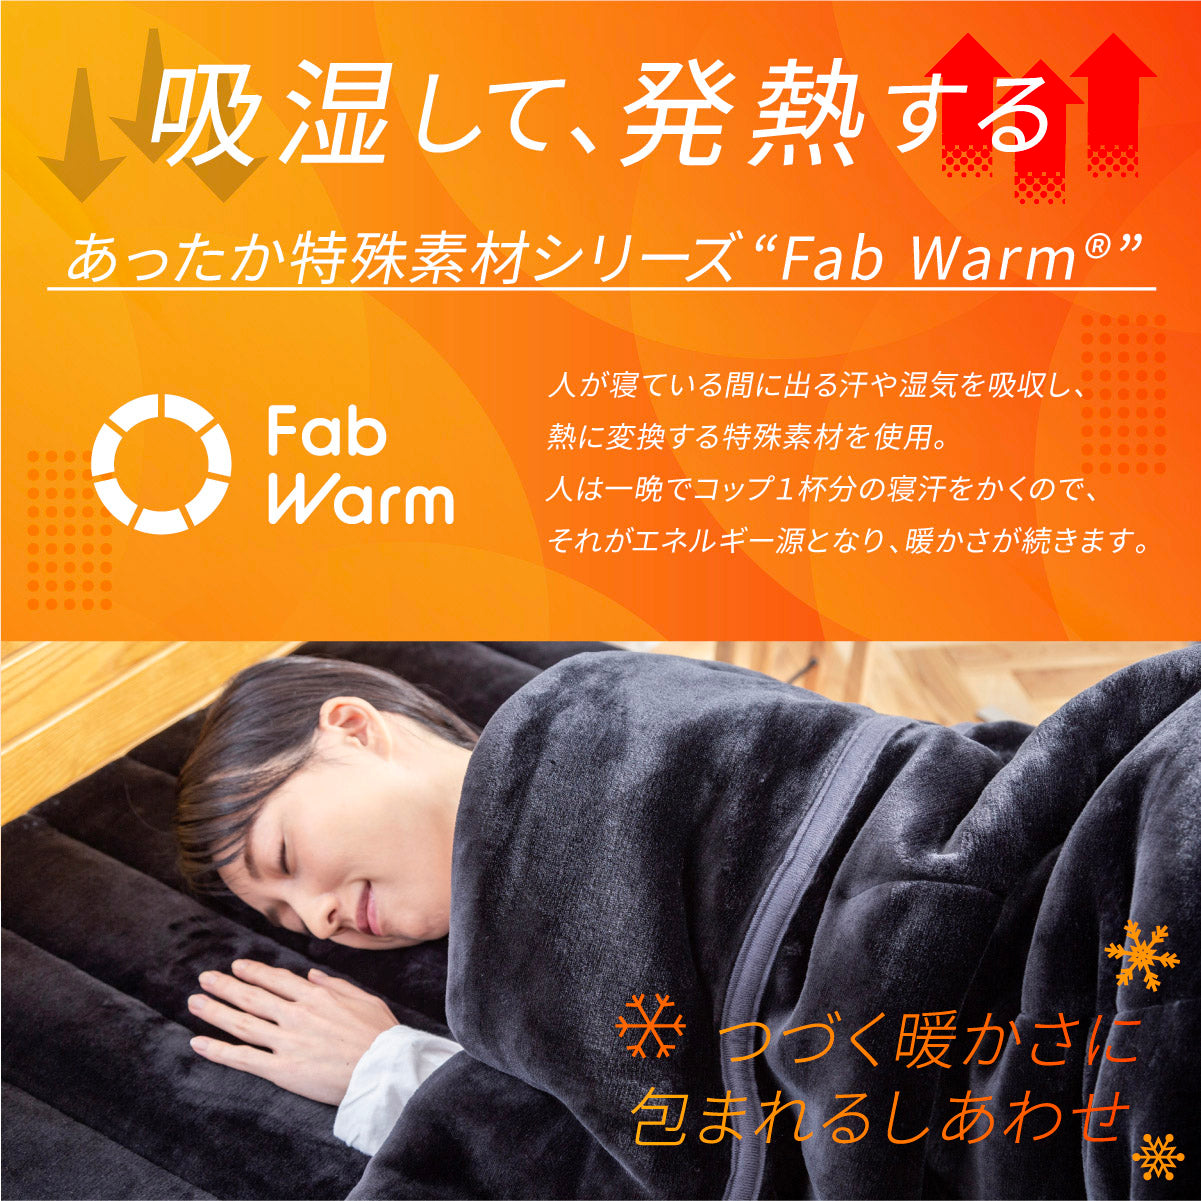 【極暖 吸湿して発熱するプラス2.5℃の暖かさ】Fab Warm フランネル敷きパッド